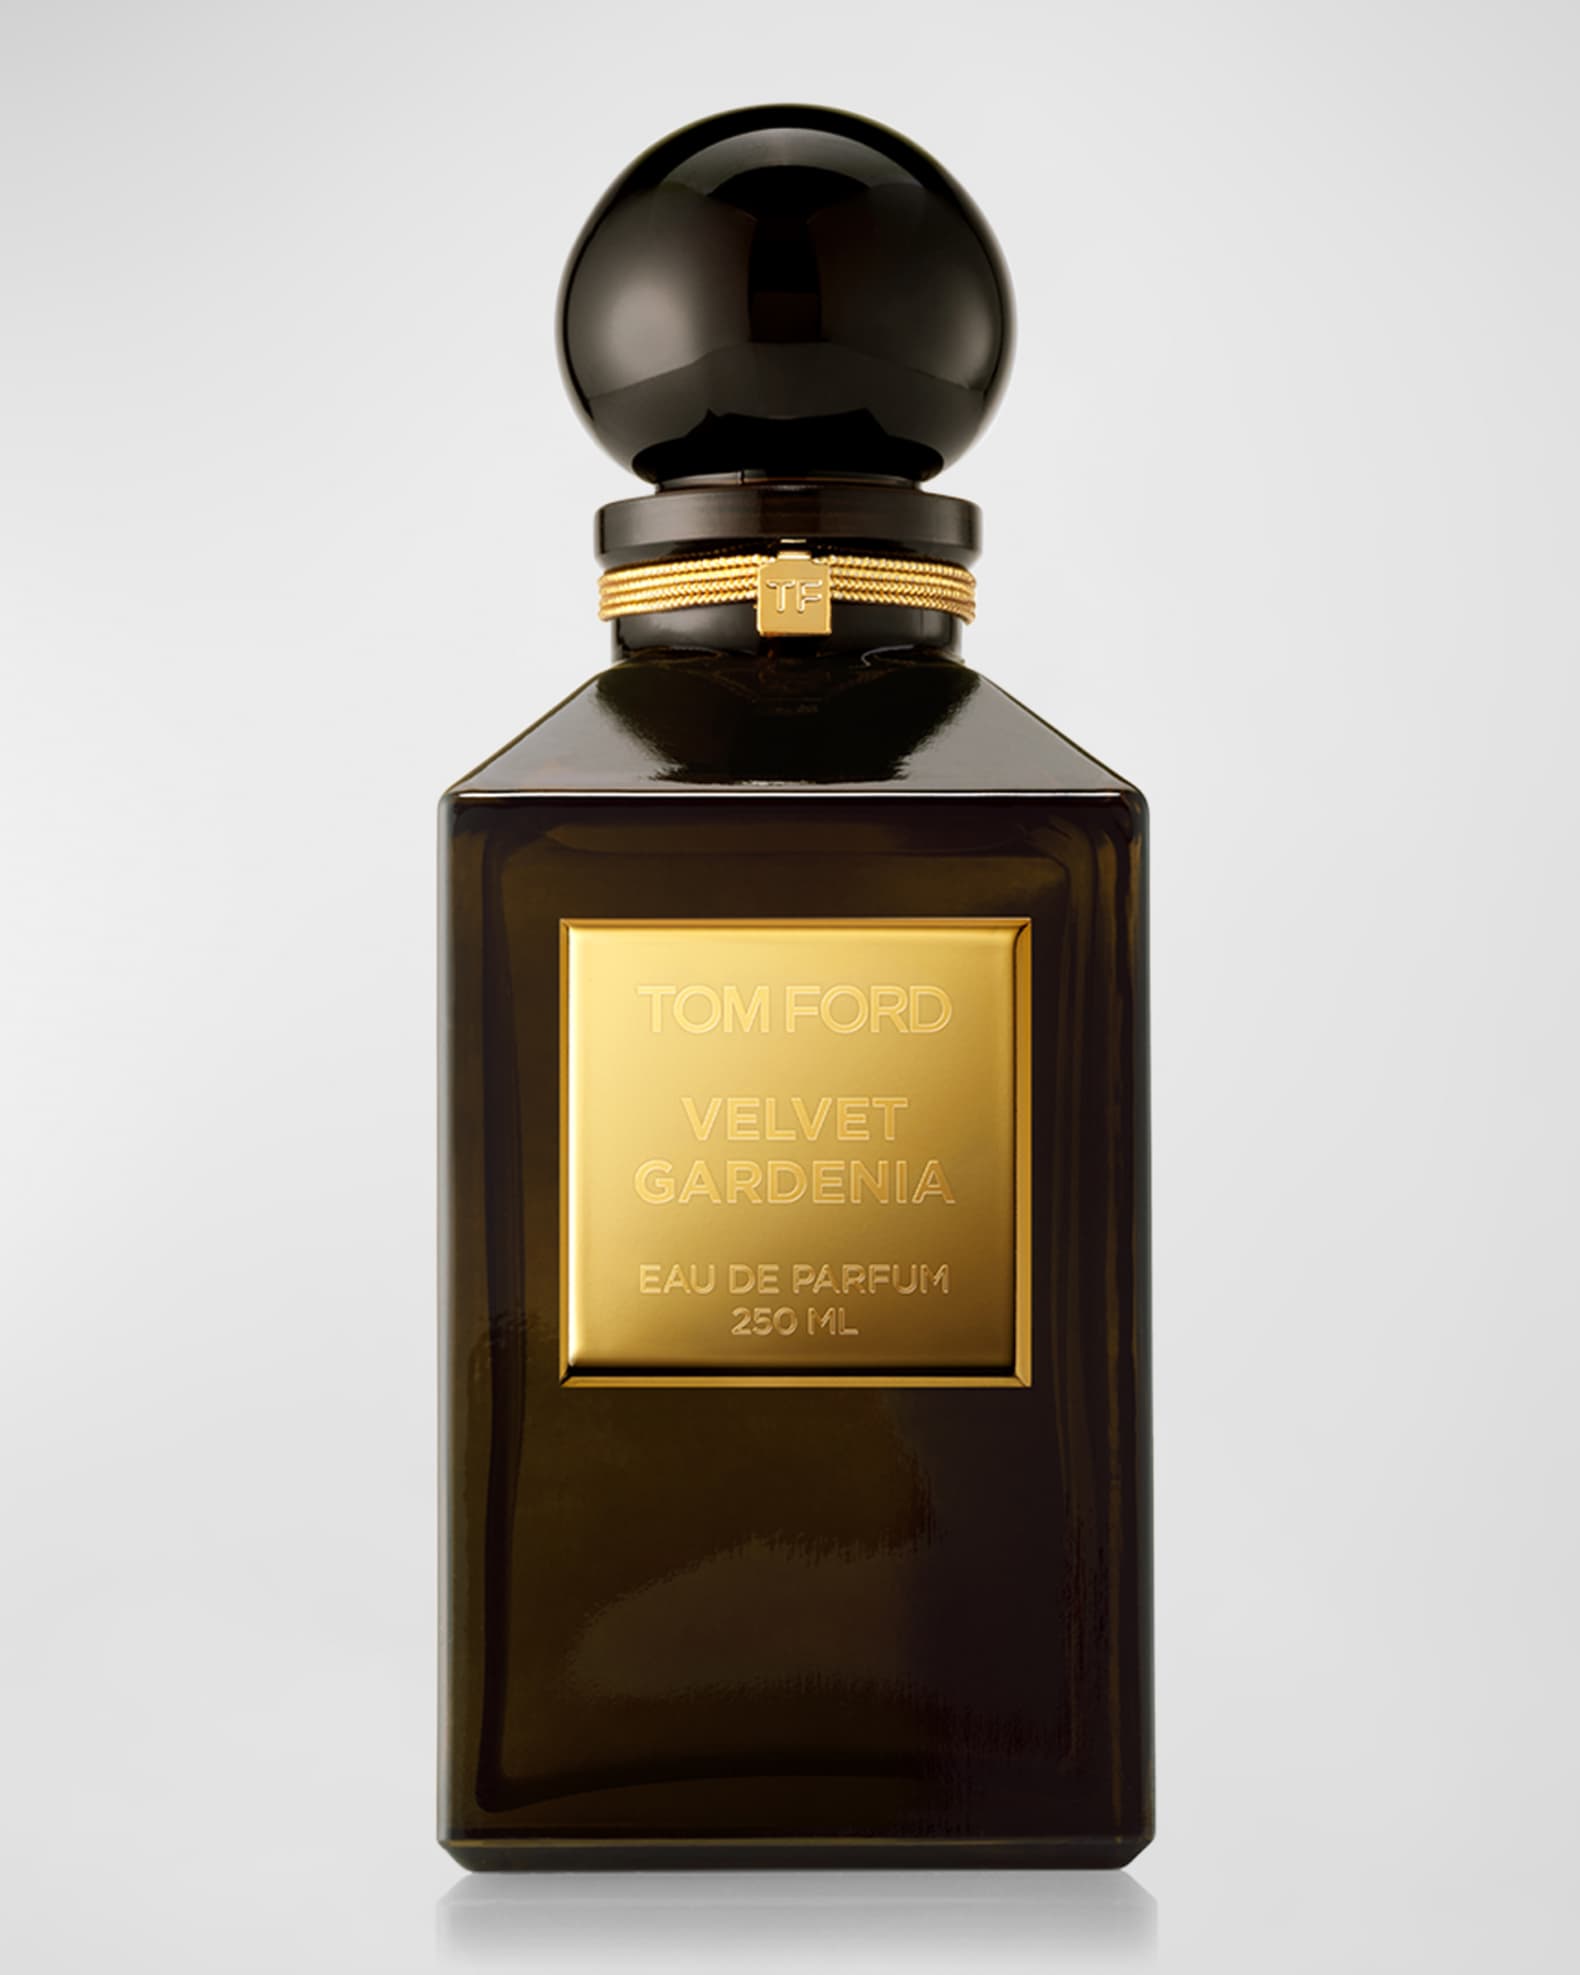 TOM FORD Velvet Gardenia Eau de Parfum,  oz. - Private Blend Reserve  Decanter | Neiman Marcus